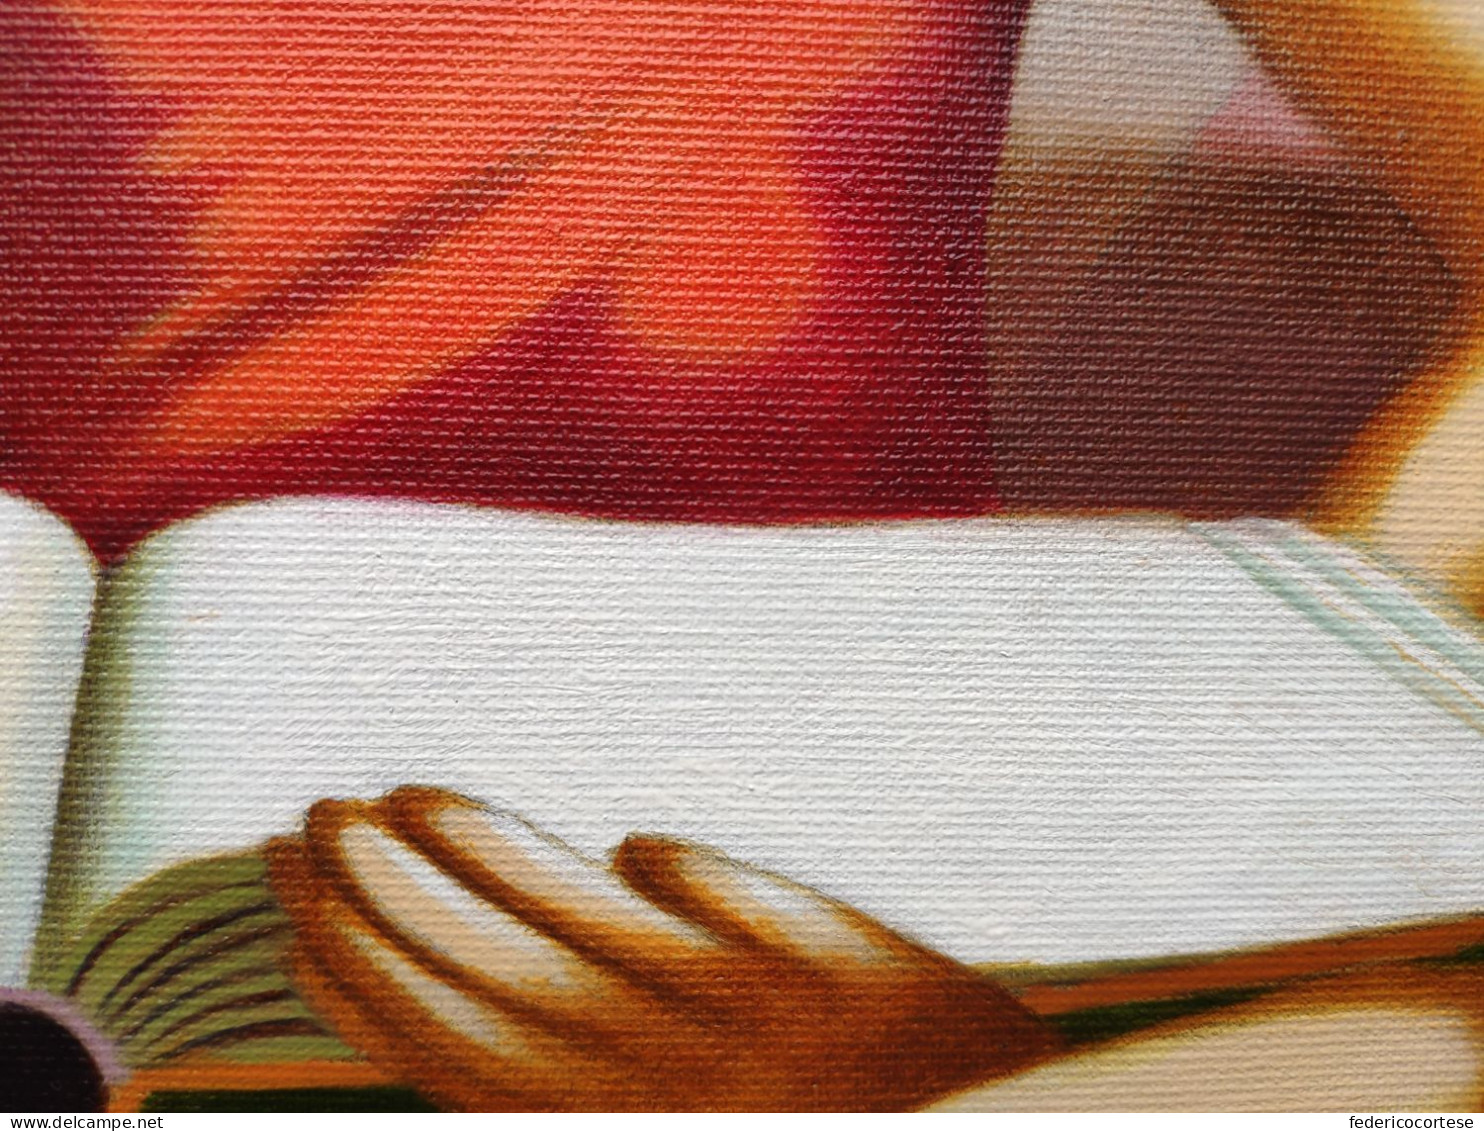 La stanza di lettura, olio su tela / The reading room, oil on canvas